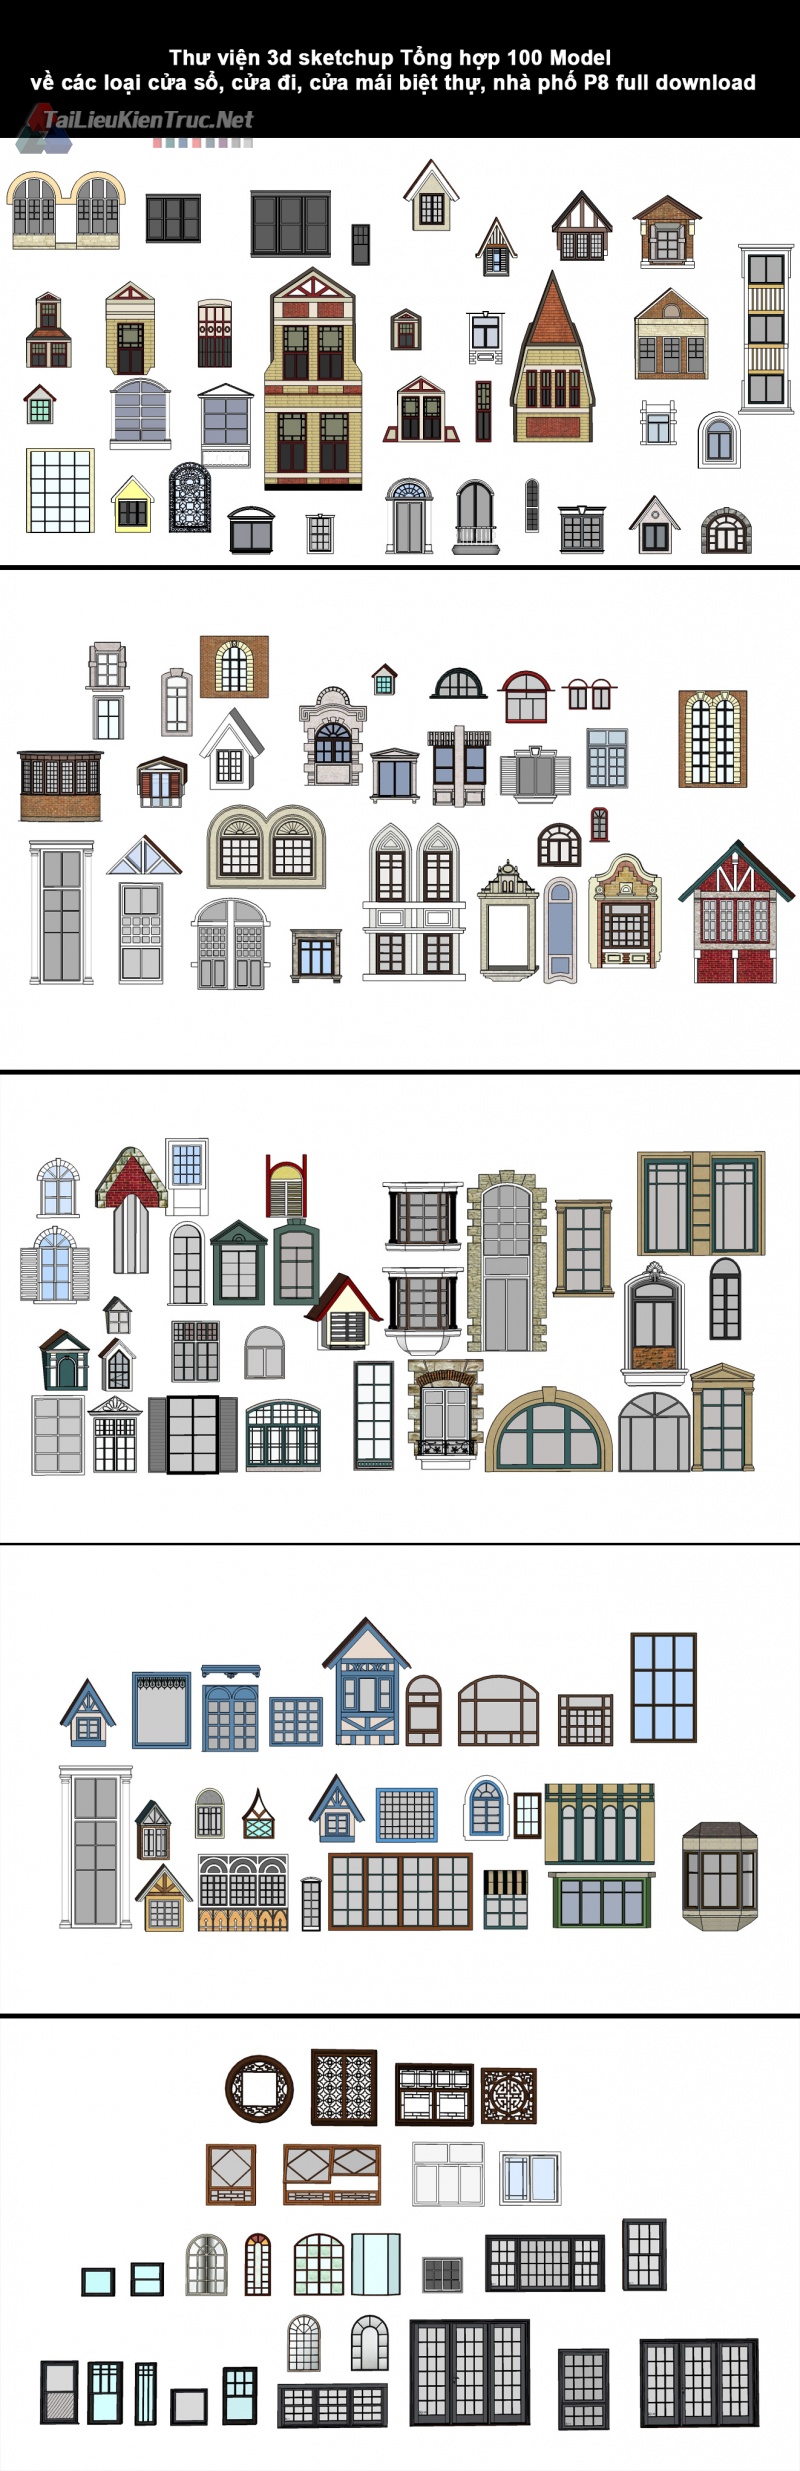 Thư viện 3d sketchup Tổng hợp 100 Model về các loại cửa sổ, cửa đi, cửa mái biệt thự, nhà phố P8 full download